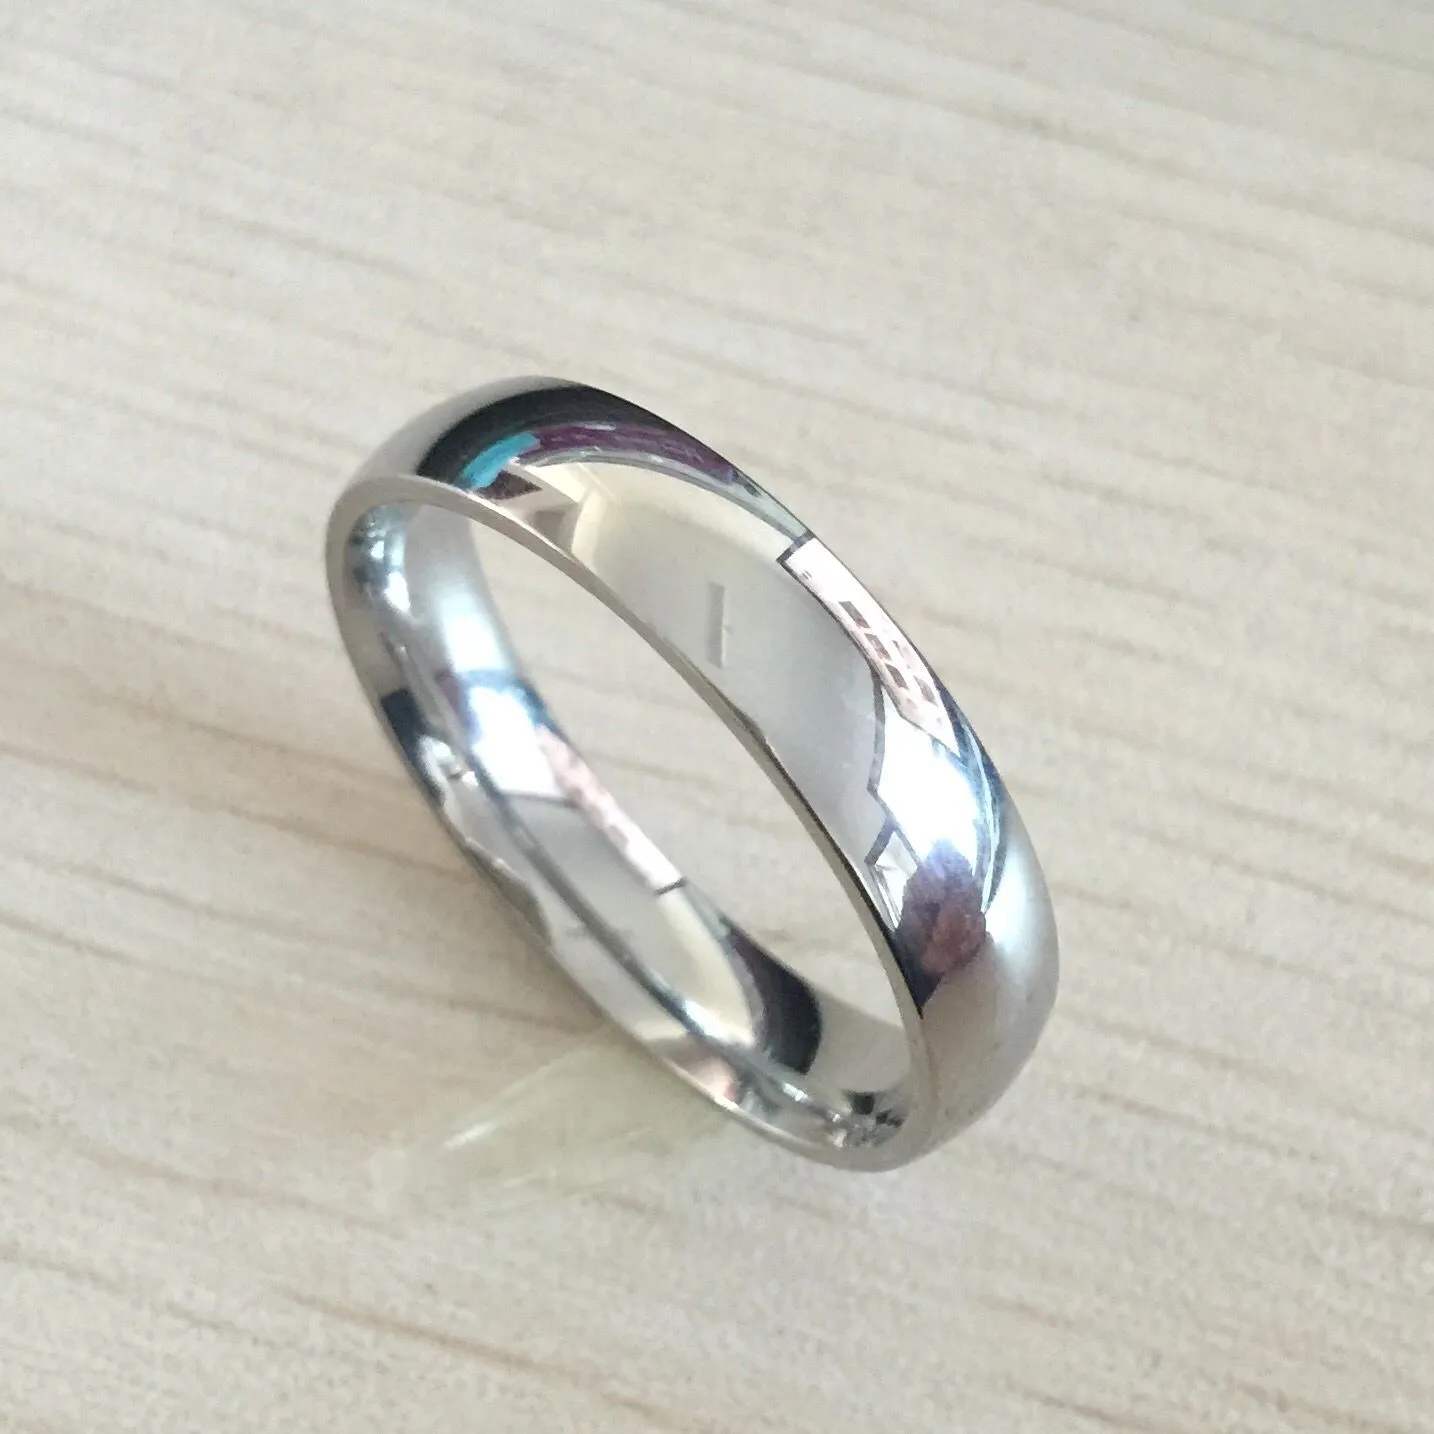 클래식 남성 리얼 실버 18K 화이트 골드 도금 6mm 티타늄 스틸 여성 남성 결혼 반지 최고 품질 연인 웨딩 쥬얼리를 페이드하지 마십시오